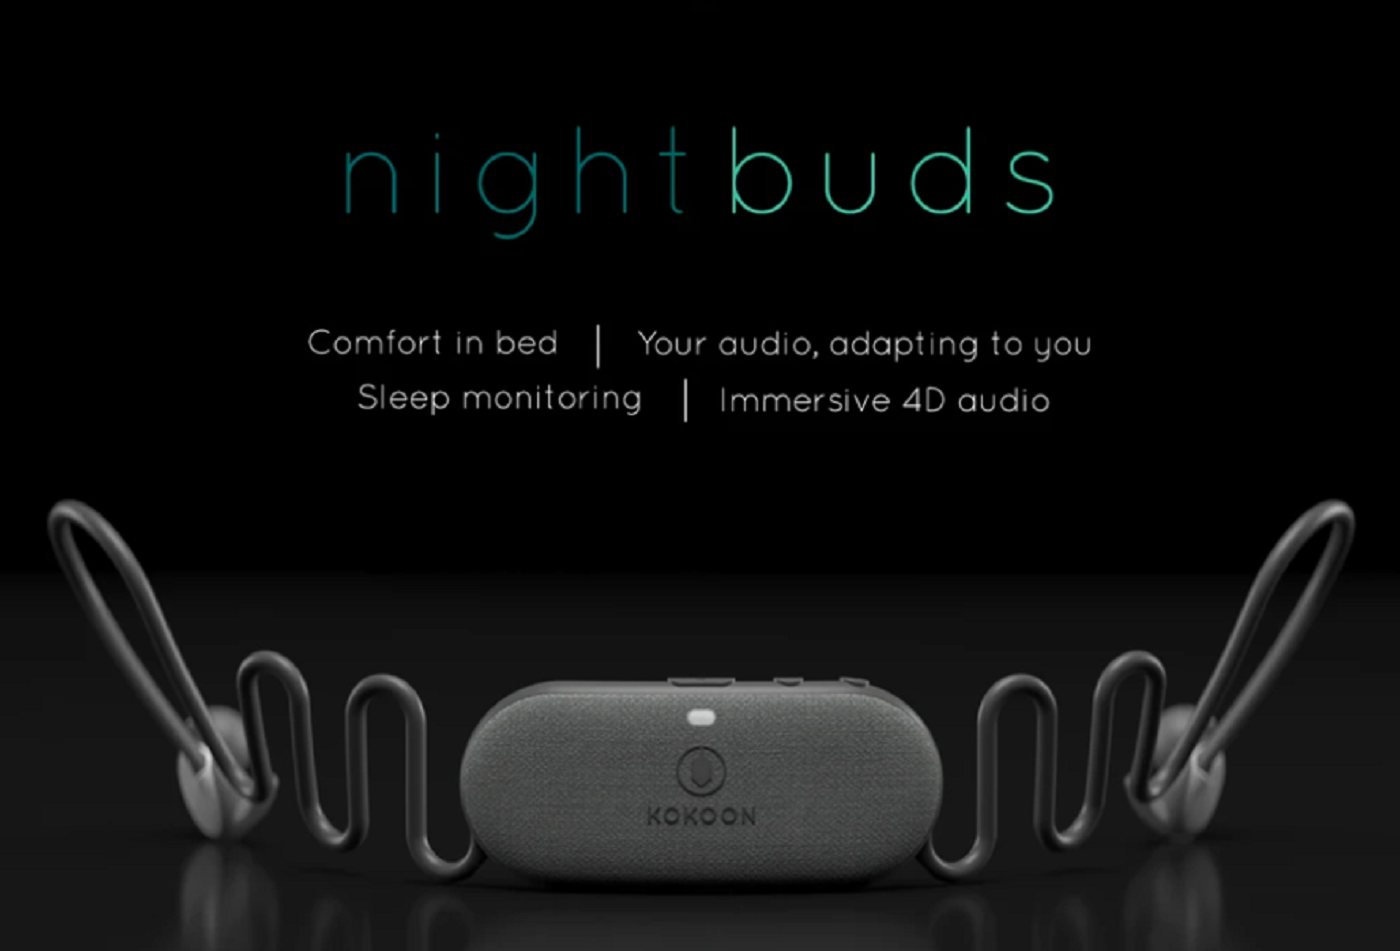 Kokoon NightBuds: Tai nghe nhét tai thông minh cho giấc ngủ ngon hơn